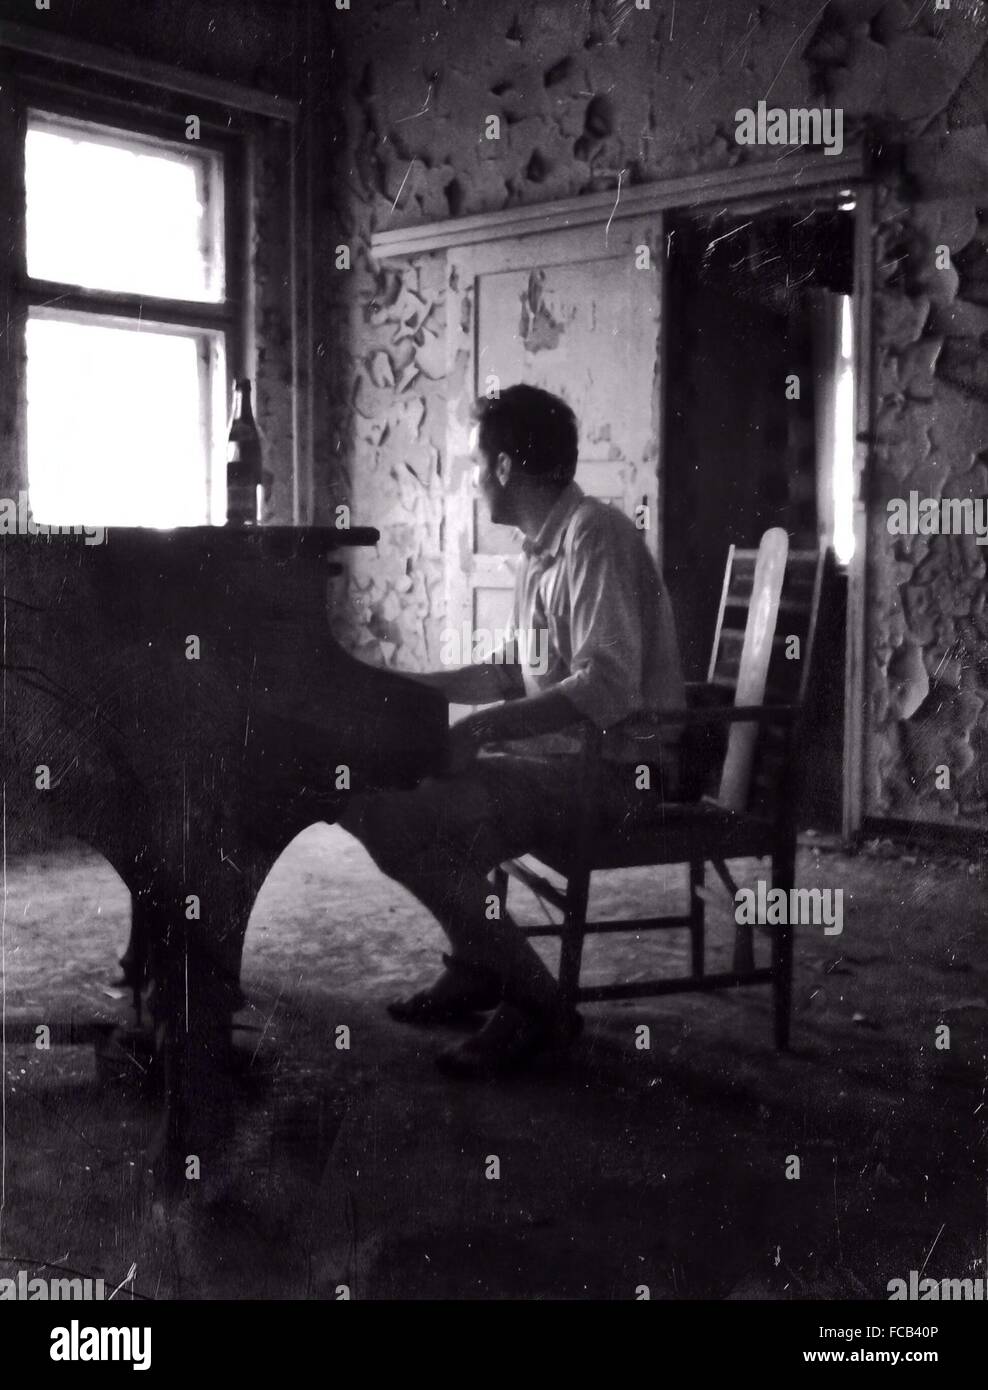 Longueur totale du pianiste jouant du piano dans la maison abandonnée Banque D'Images